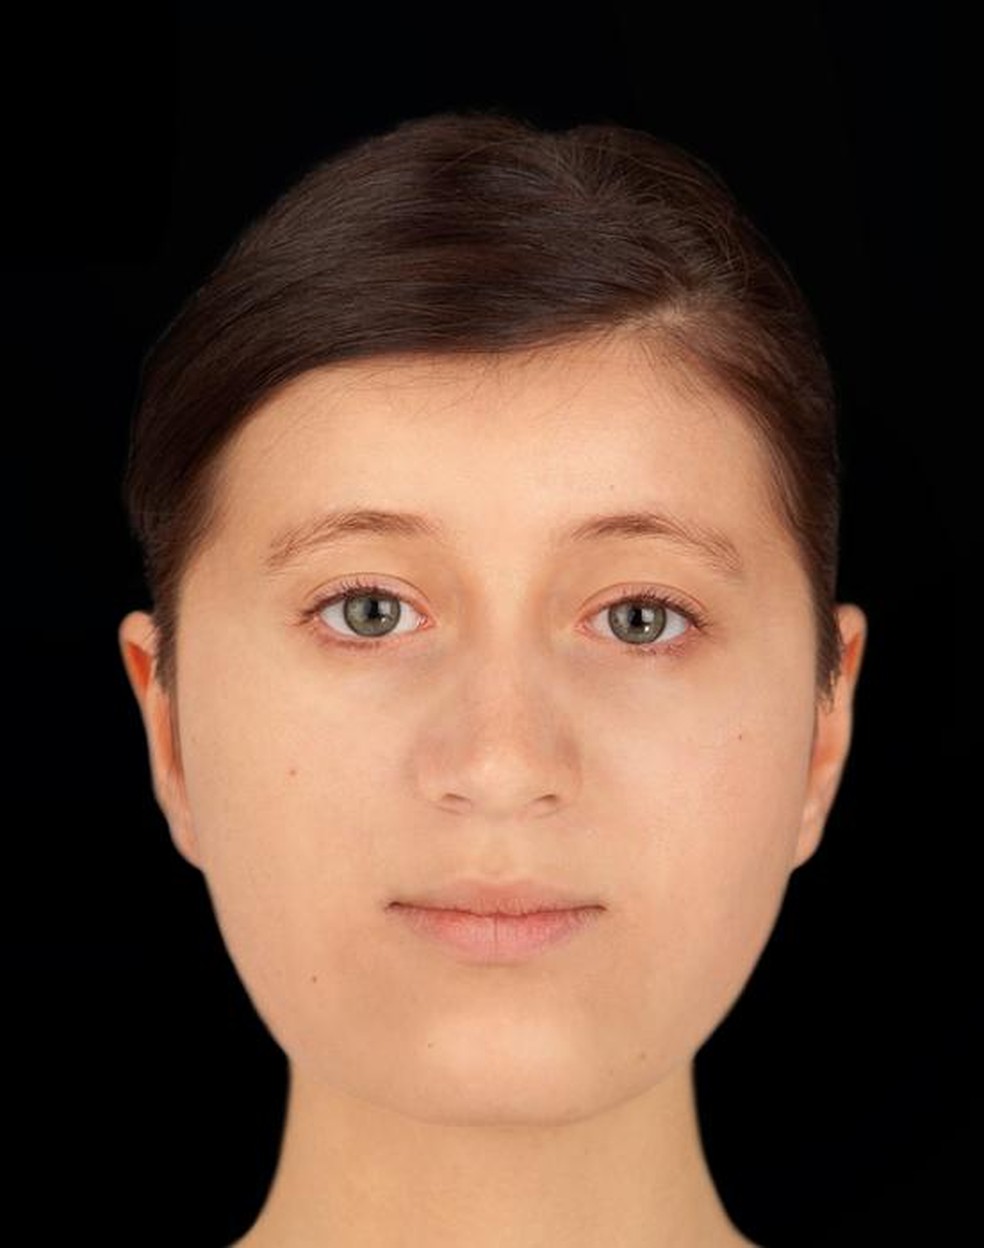 O artista Hew Morrison reconstruiu o rosto de uma jovem do século 7 a partir da análise do crânio dela — Foto: Hew Morrison/Unidade Arqueológica da Universidade de Cambridge